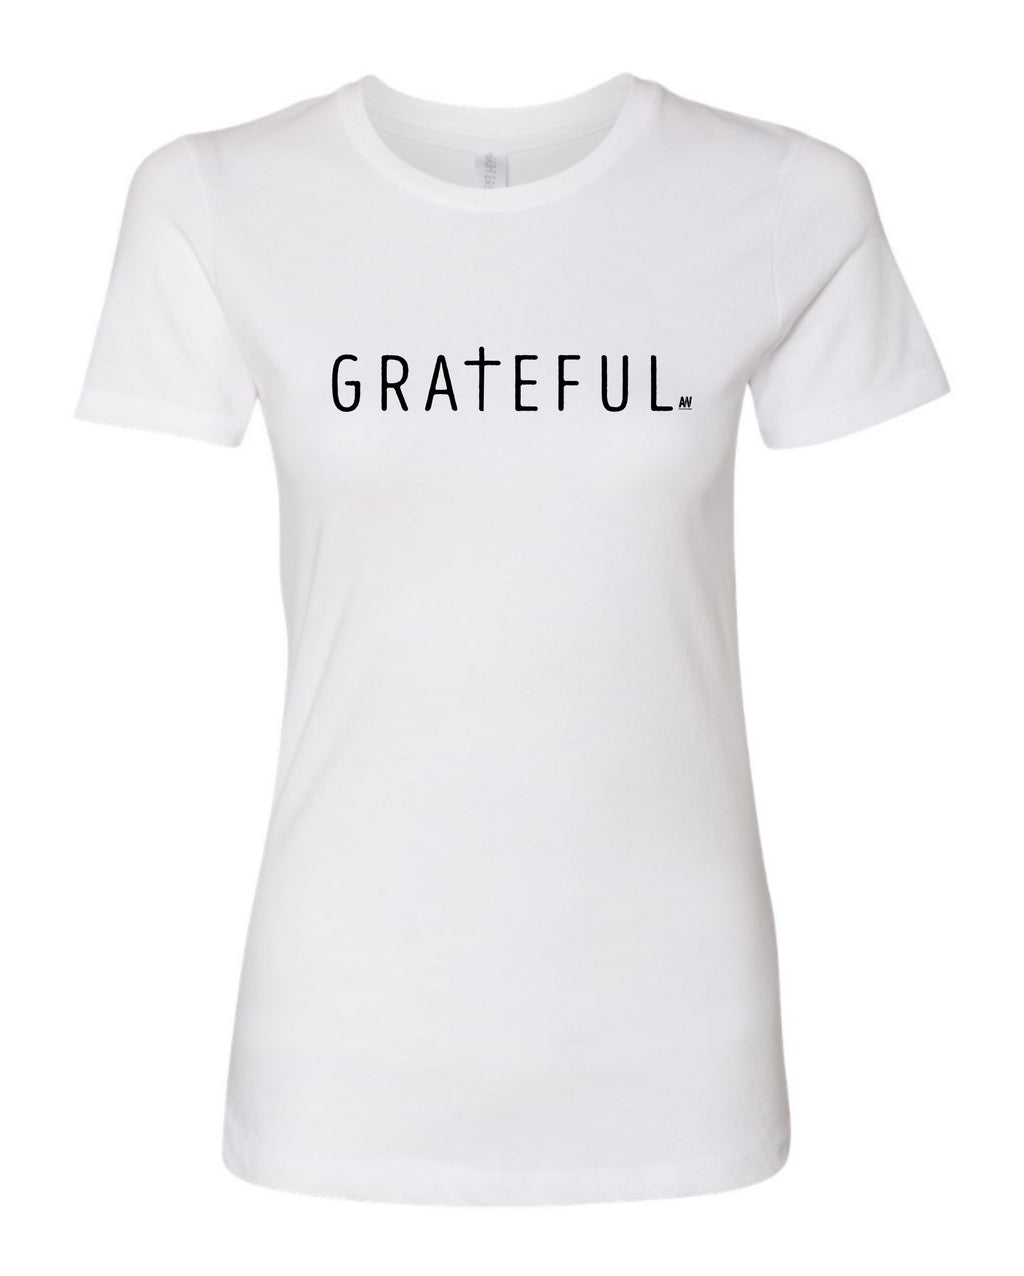 Grateful - Women's Shirt